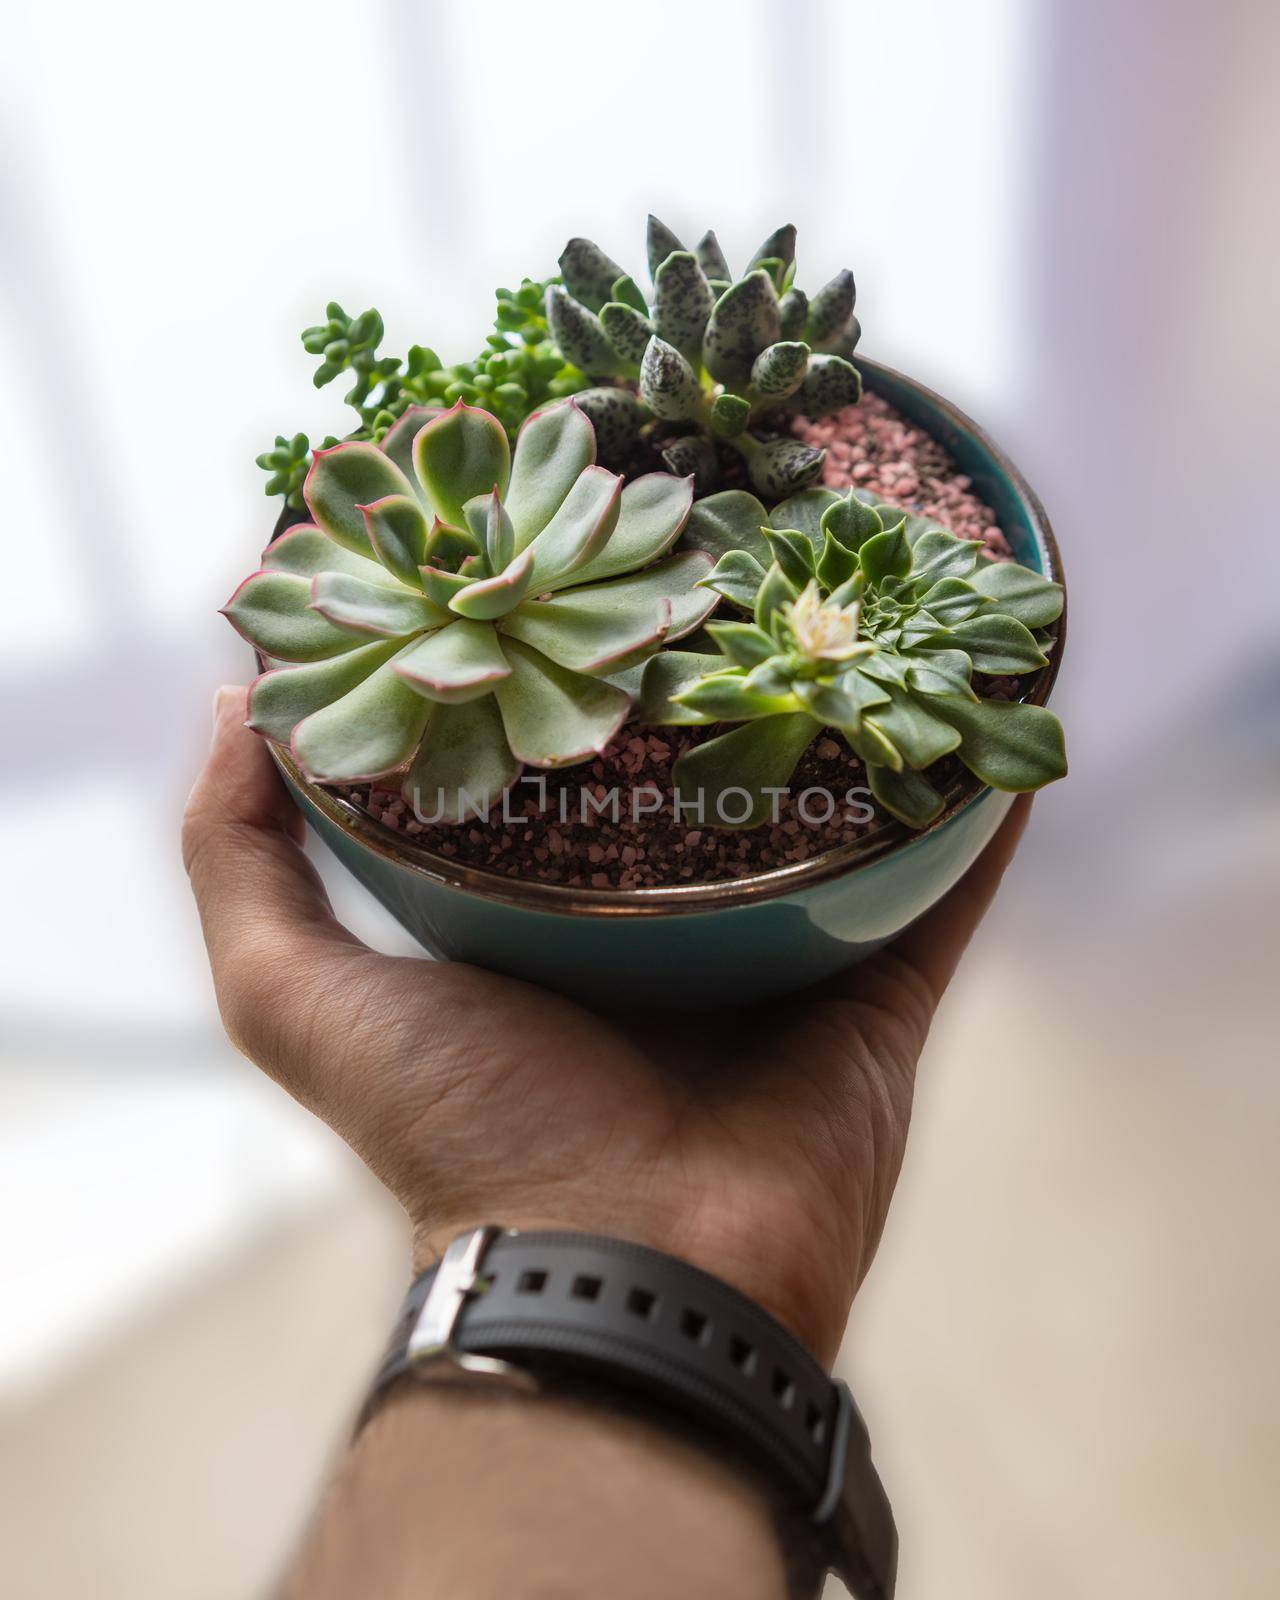 Holding in hand Terrarium plant with succulent, cactus ceramic pot